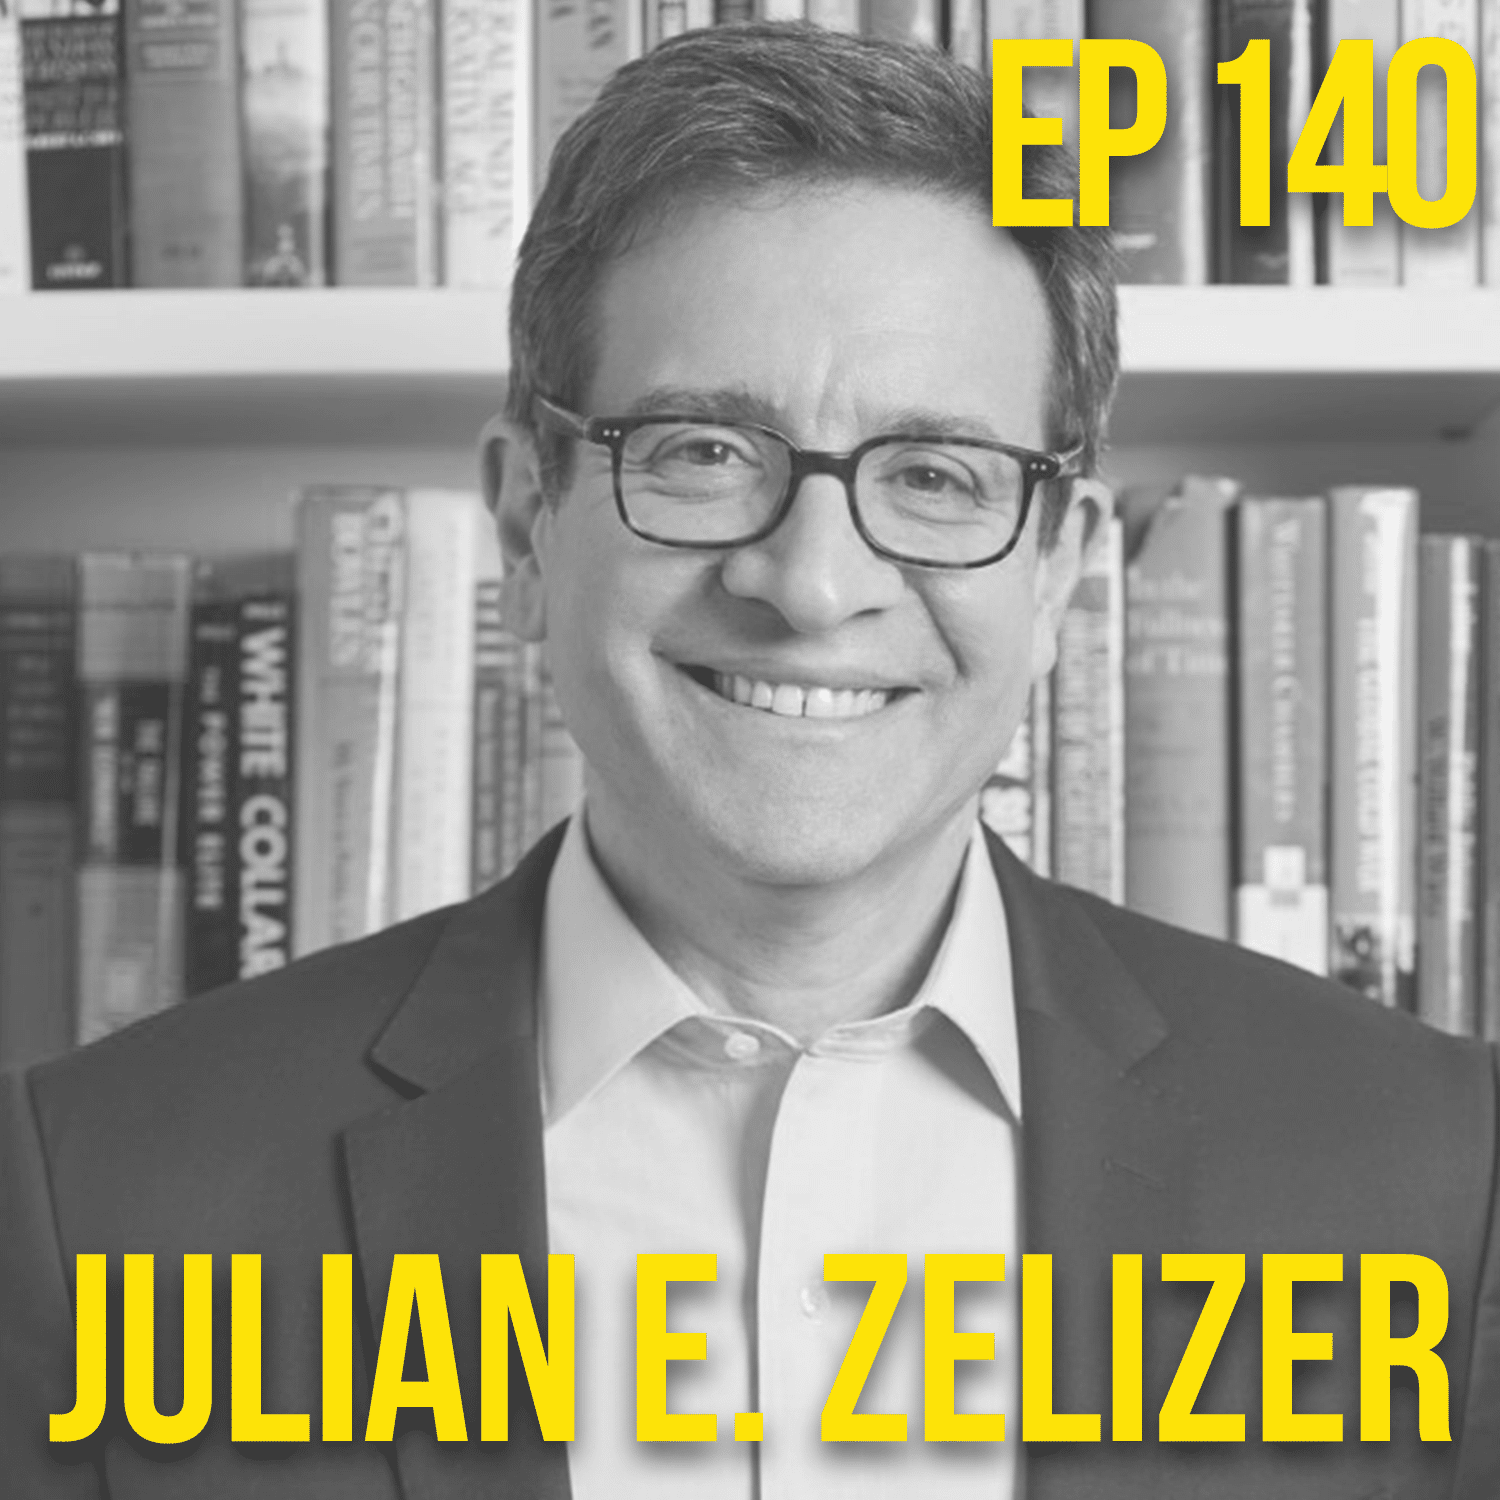 Julian E. Zelizer